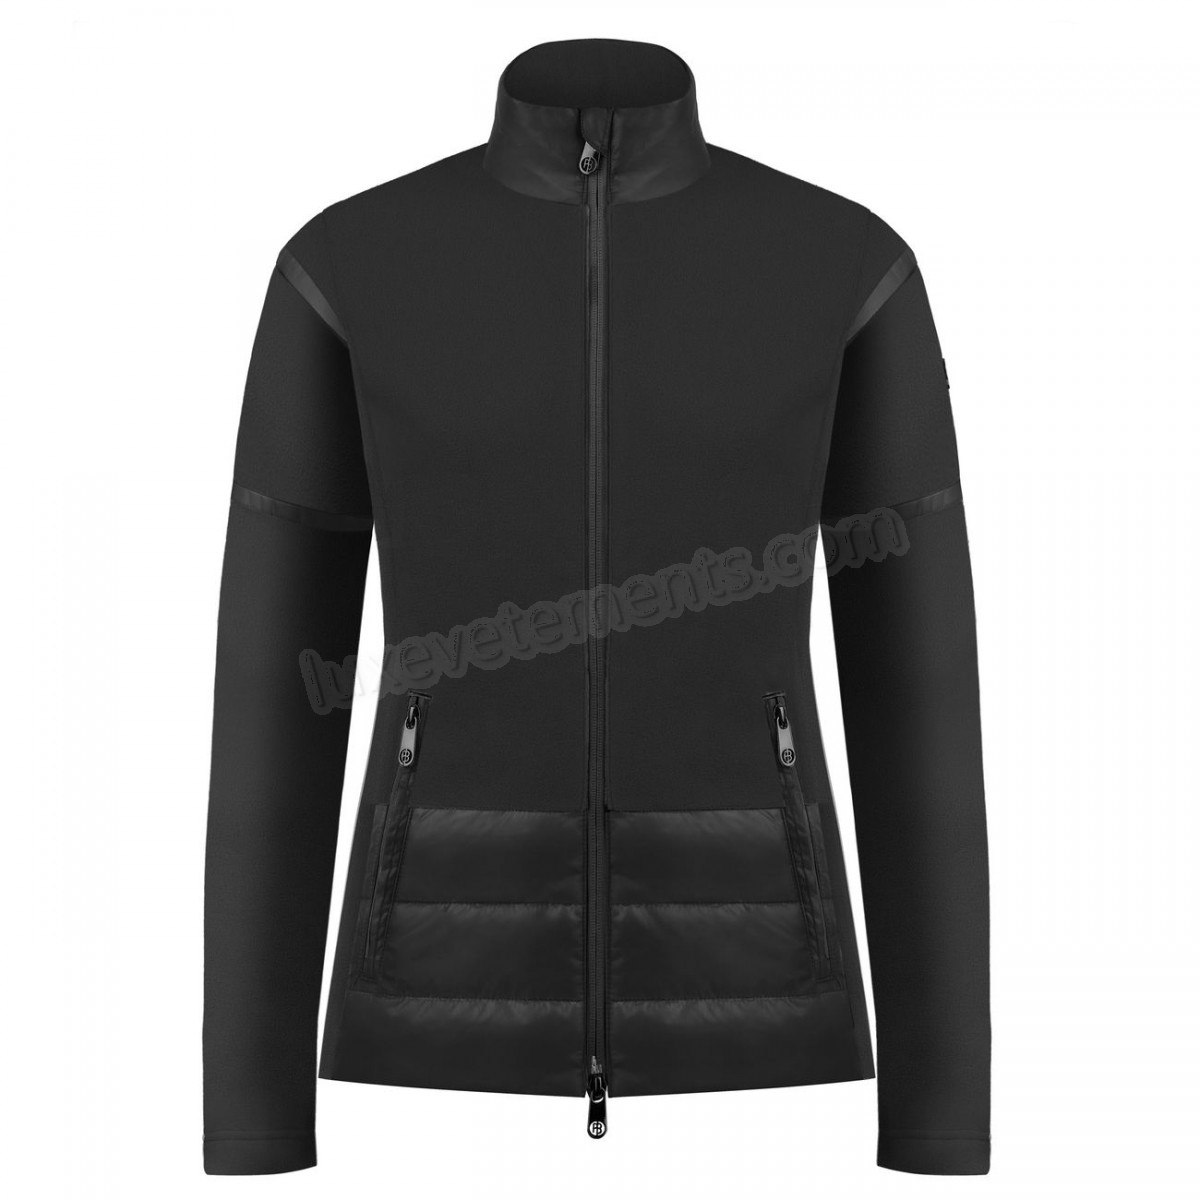 Poivre Blanc-Sports d'hiver femme POIVRE BLANC Veste Polaire Poivre Blanc Hybrid Fleece Jacket 1601 Black Femme Vente en ligne - -1